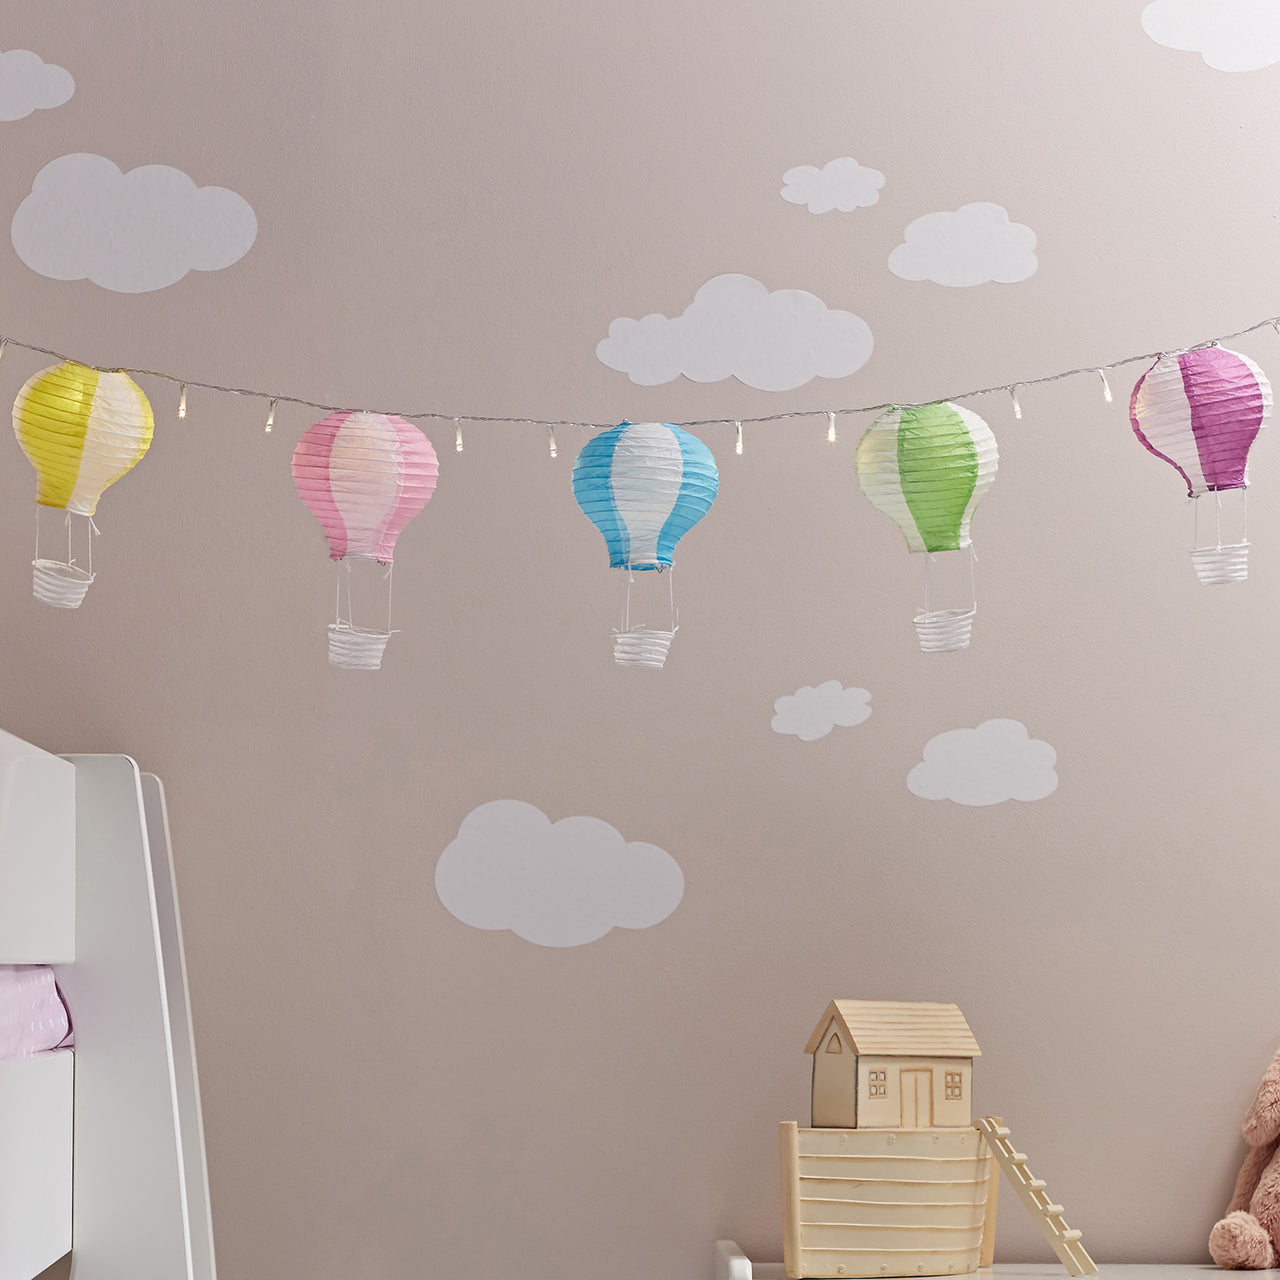 5 Pastel Hot Air Balloon Fairy Light Lanterns